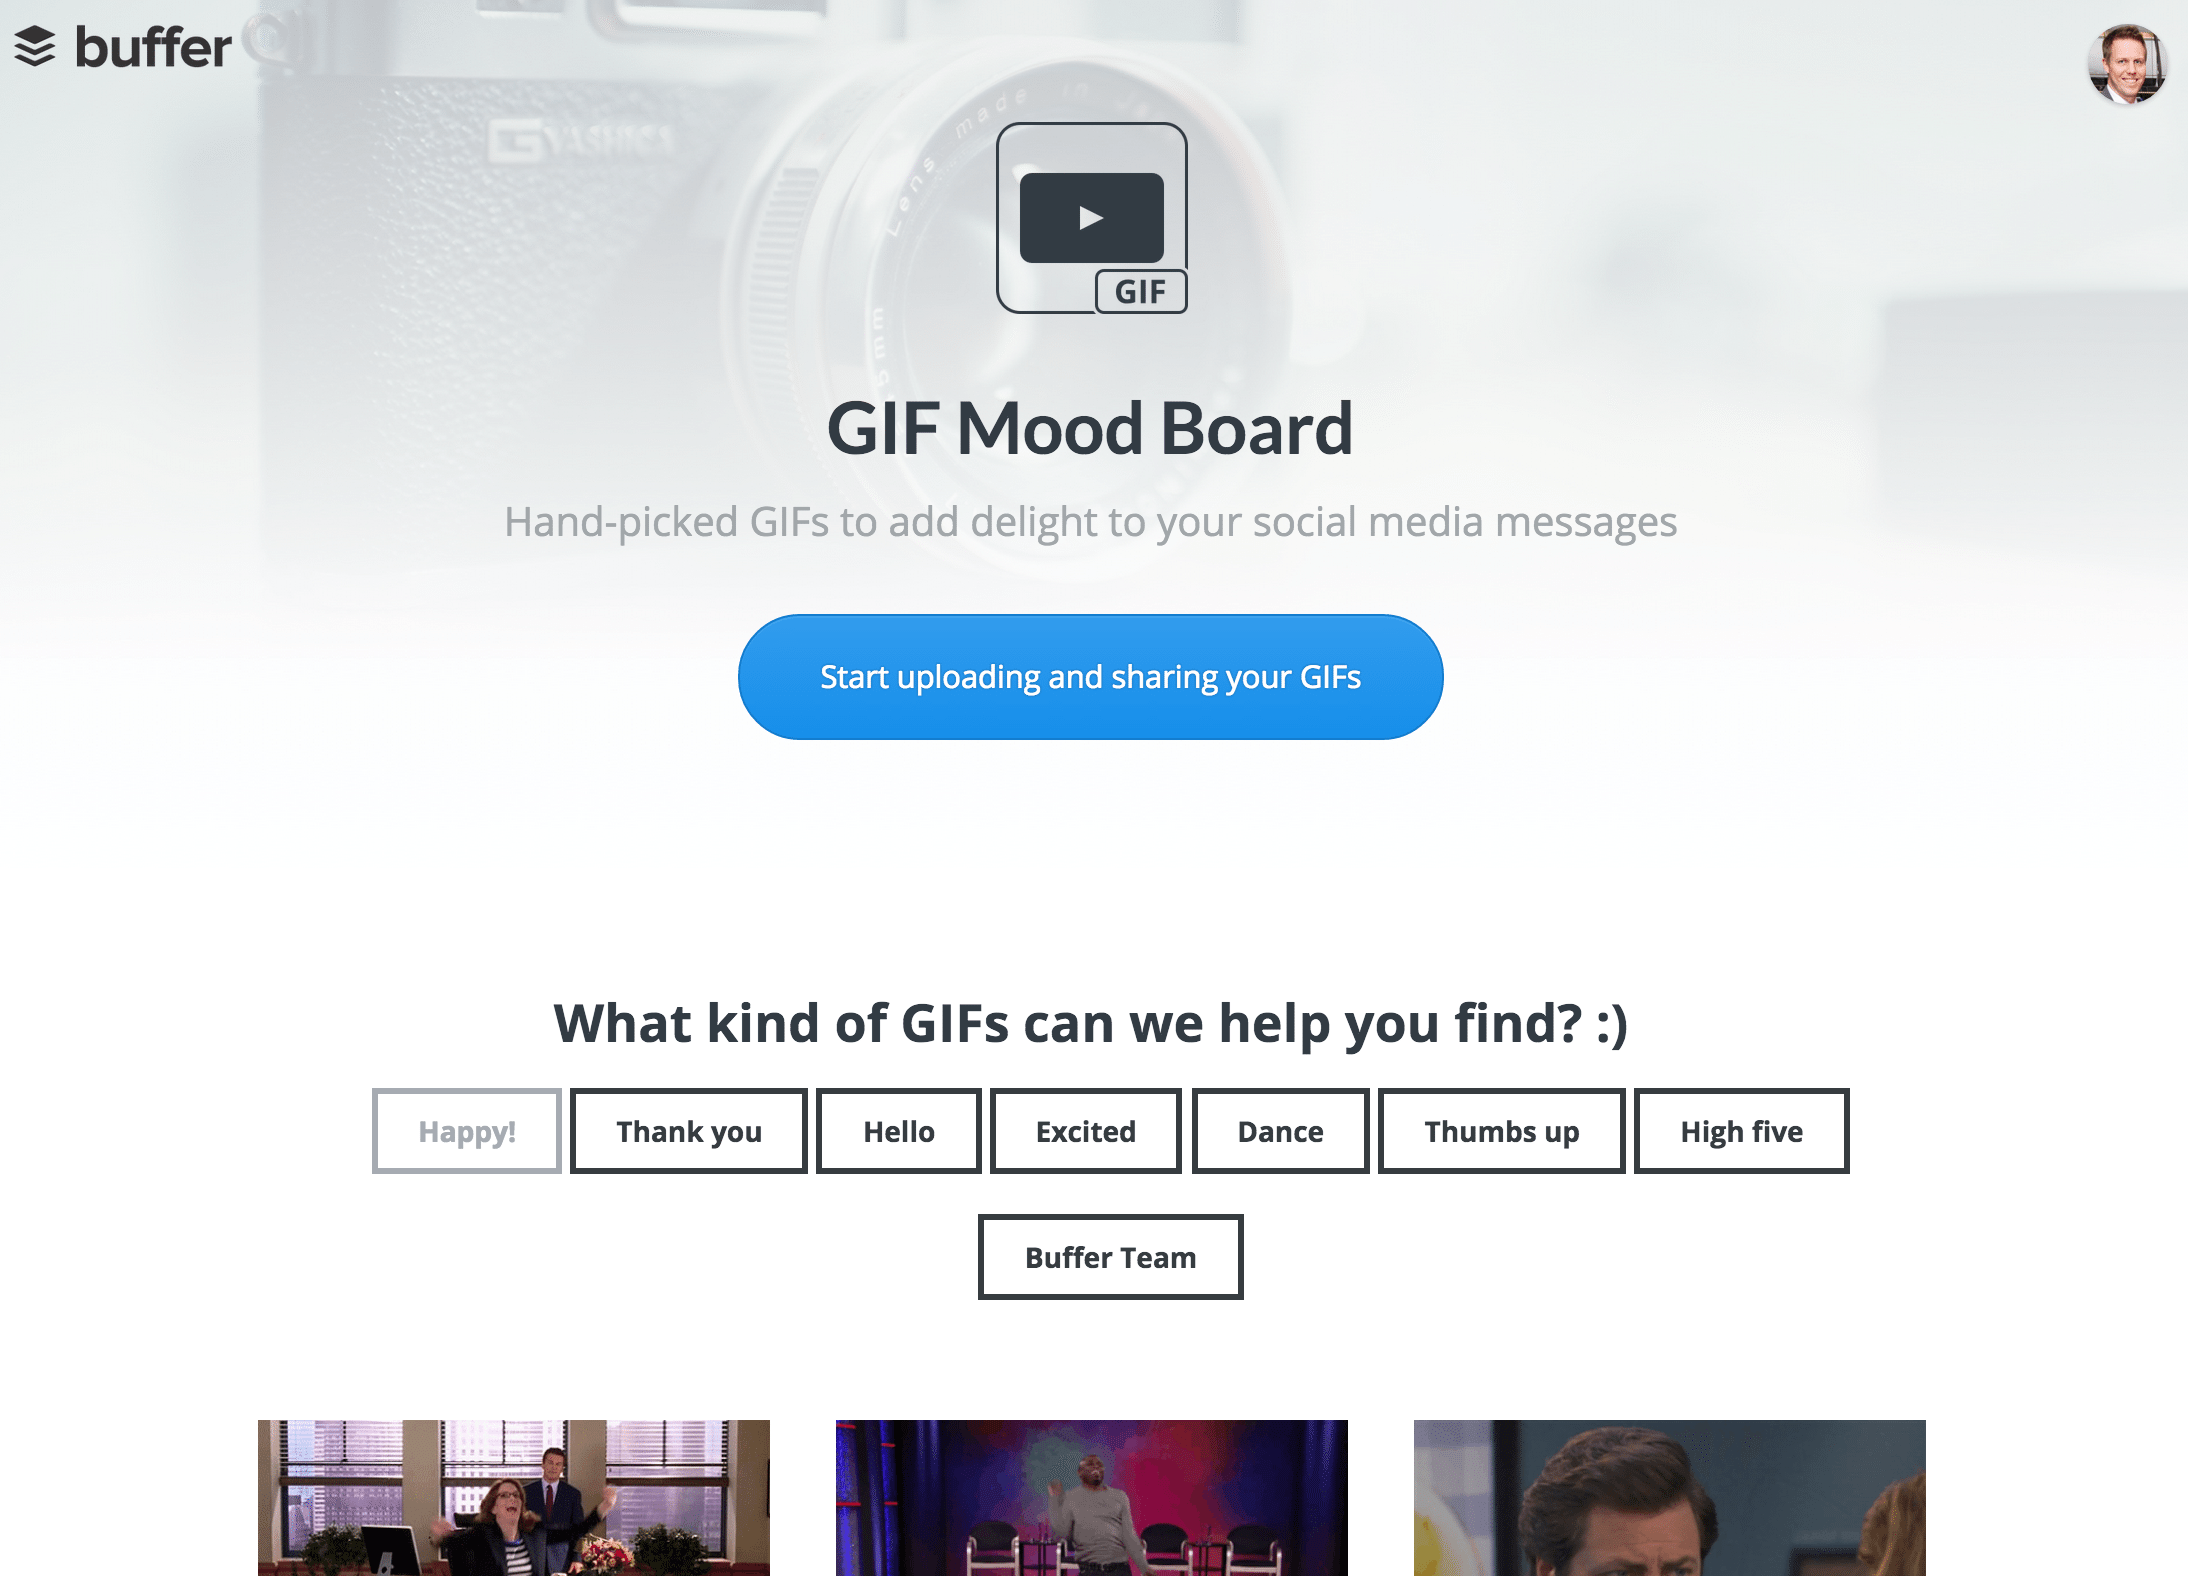 GIF mood board